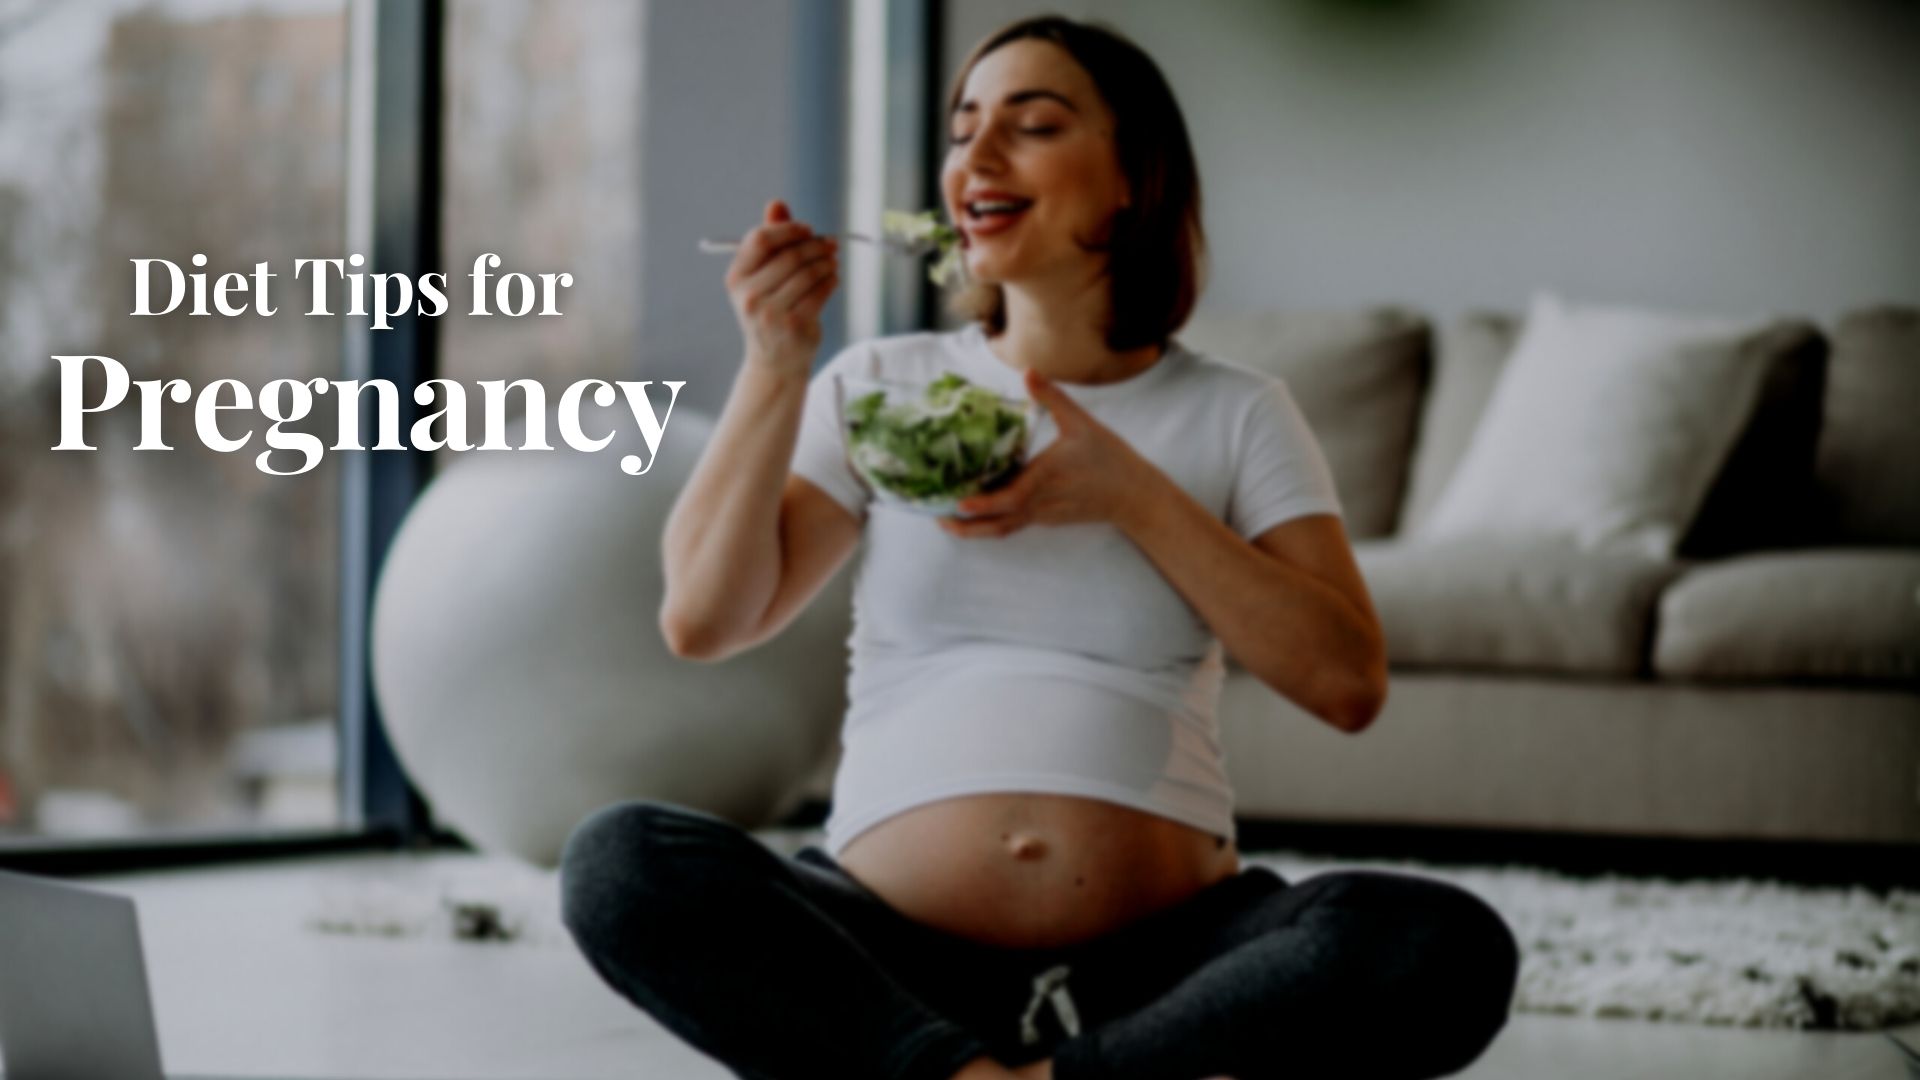 Diet tips for pregnancy